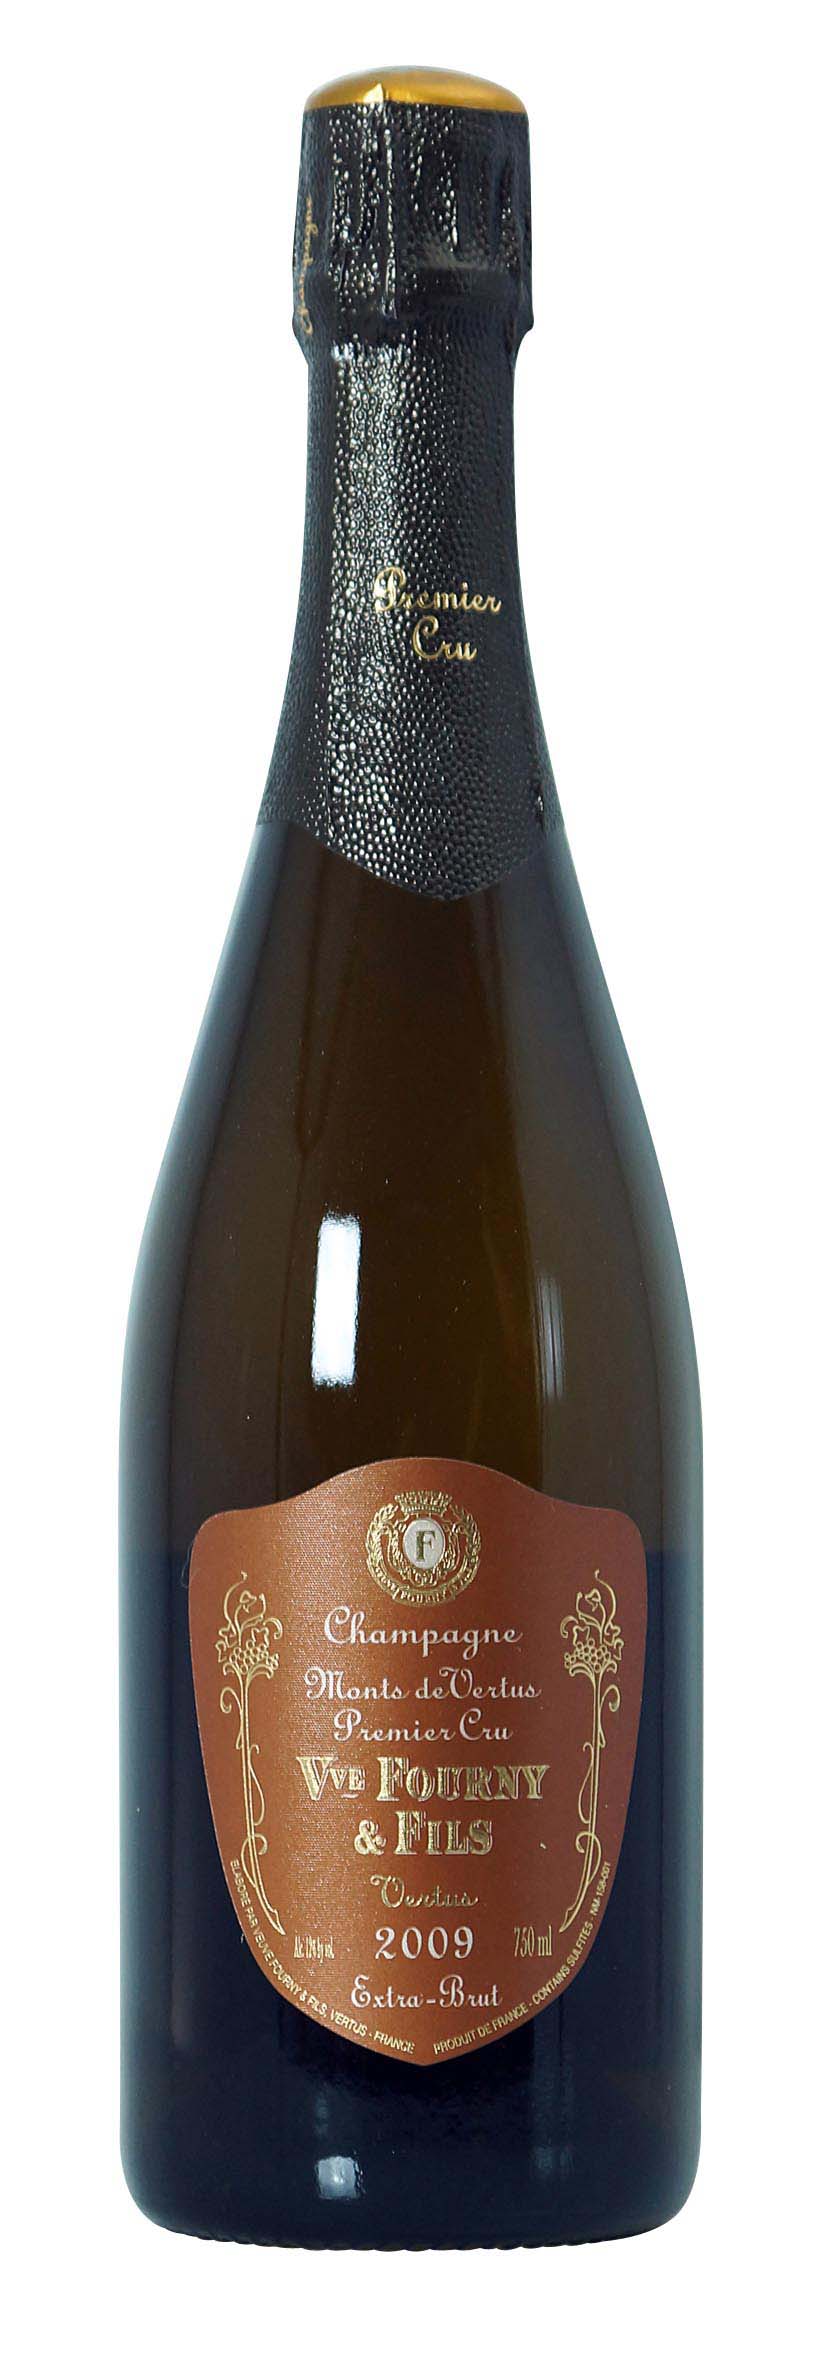 Champagne AOC Premier Cru Monts de Vertus Extra Brut 2009